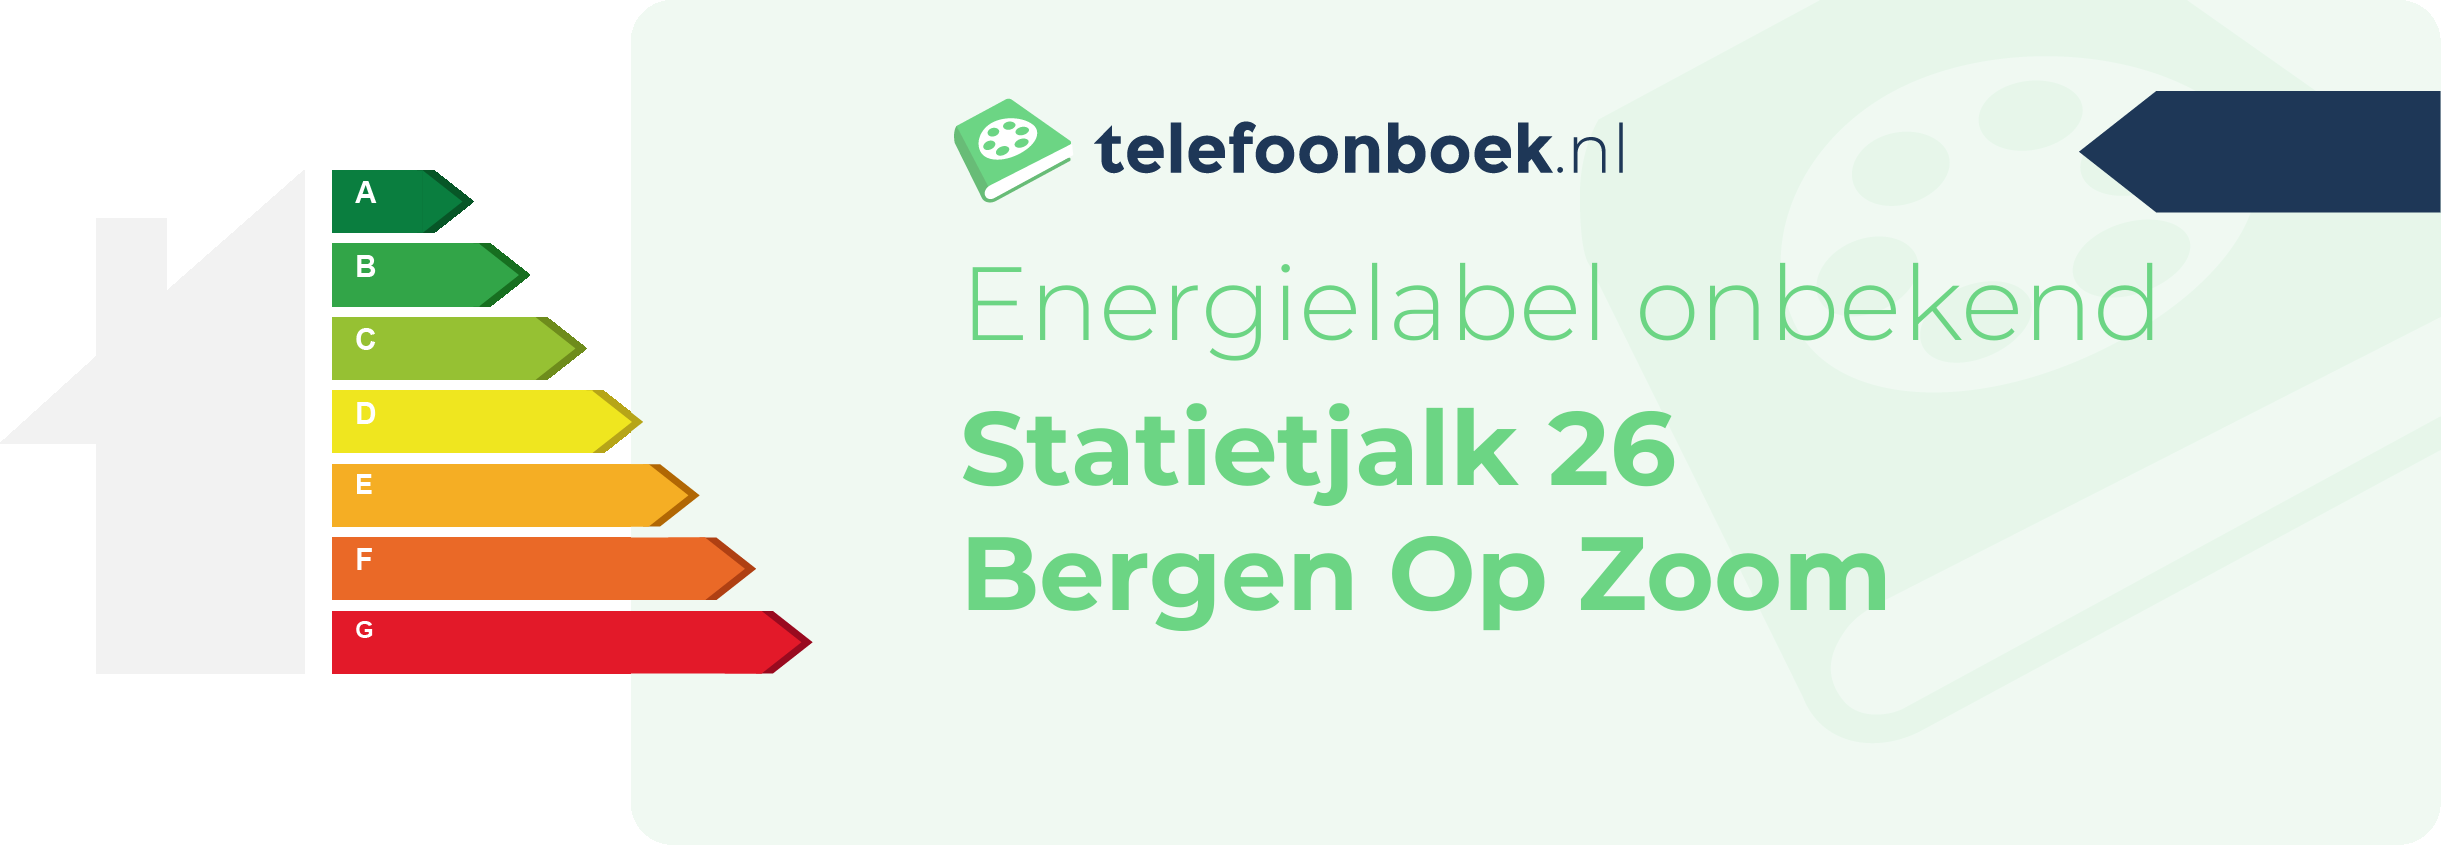 Energielabel Statietjalk 26 Bergen Op Zoom